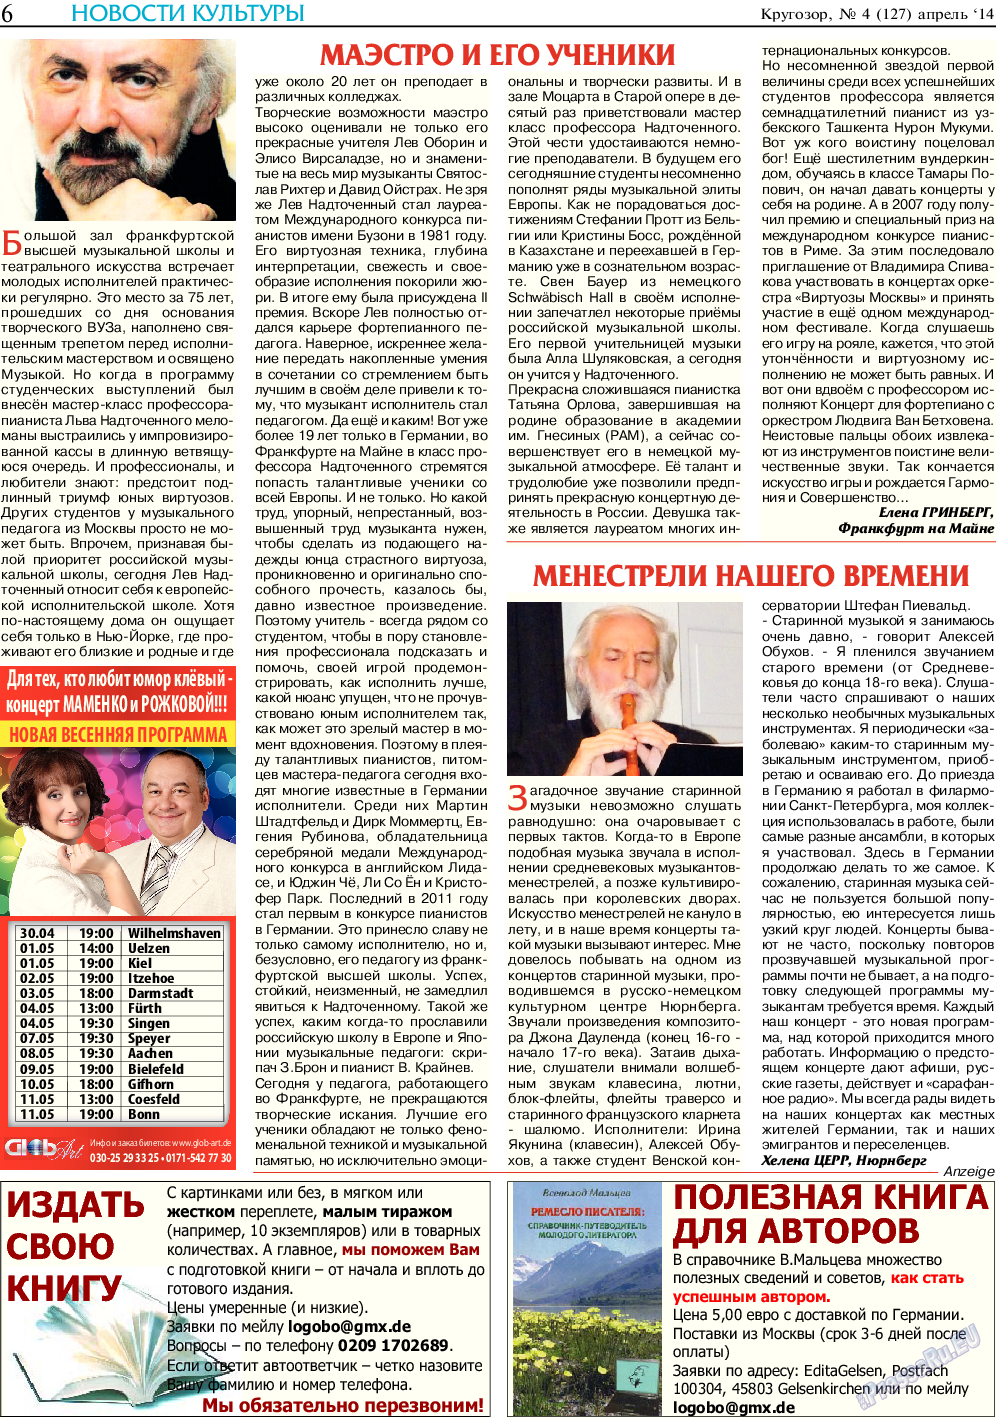 Кругозор, газета. 2014 №4 стр.6